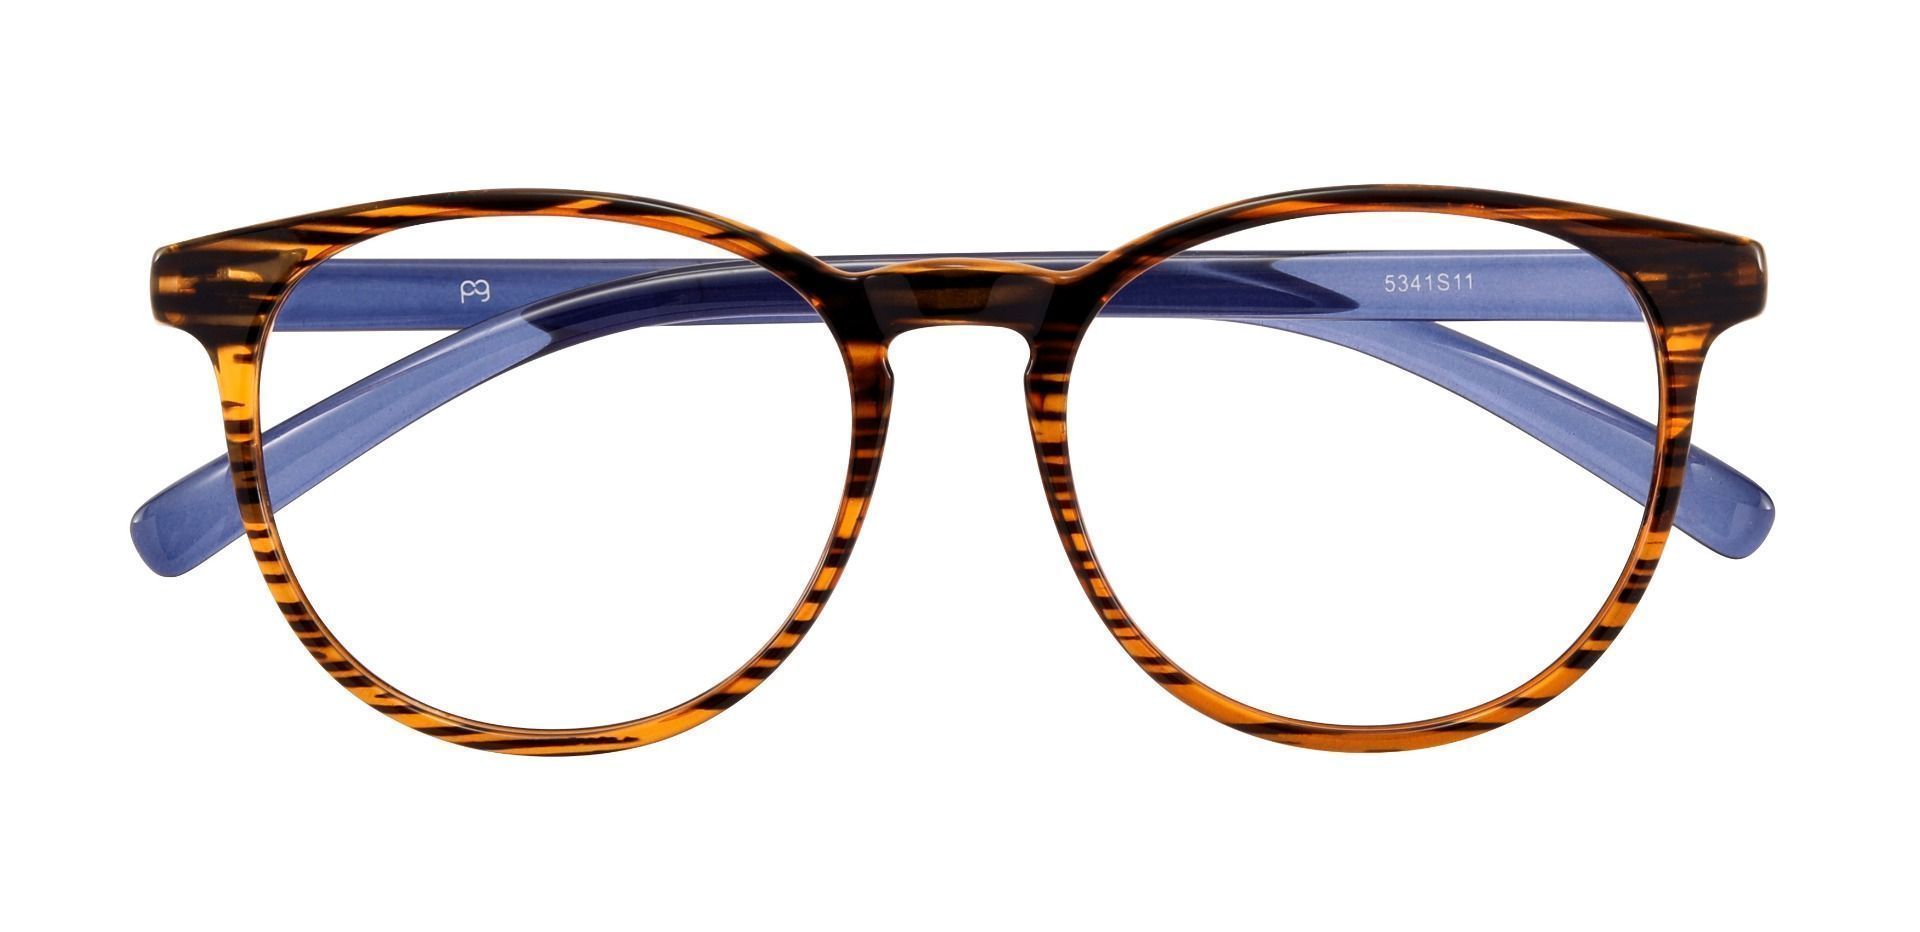 Corbett Oval Prescription Glasses - Striped